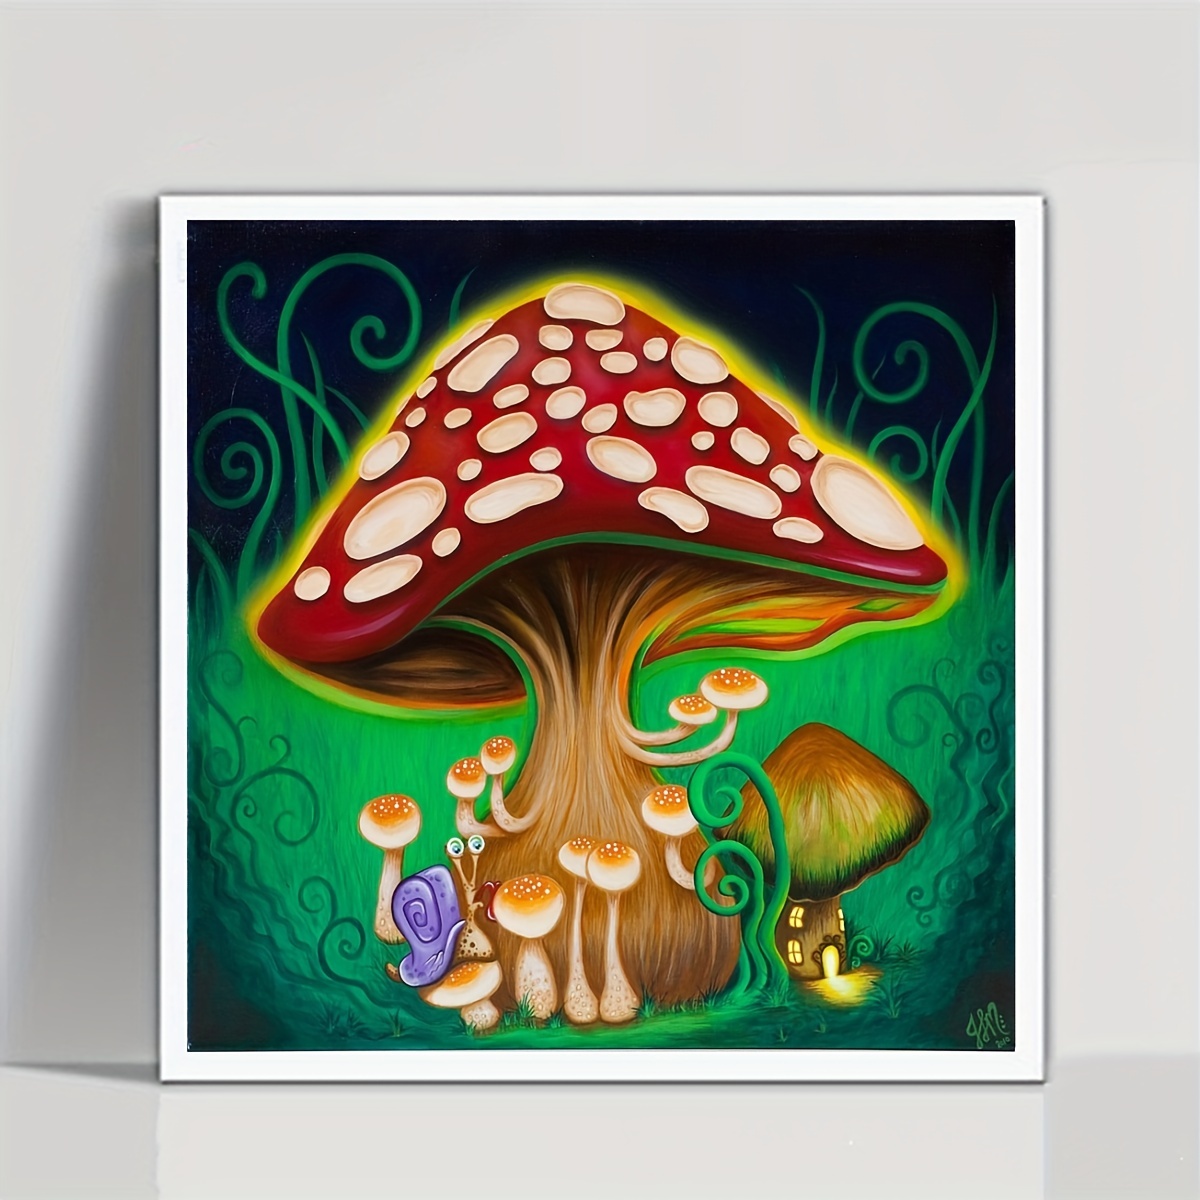 vigegu diamond painting kits for adults - mushroom flower eye skeleton moon  diy 5d diamond art kits